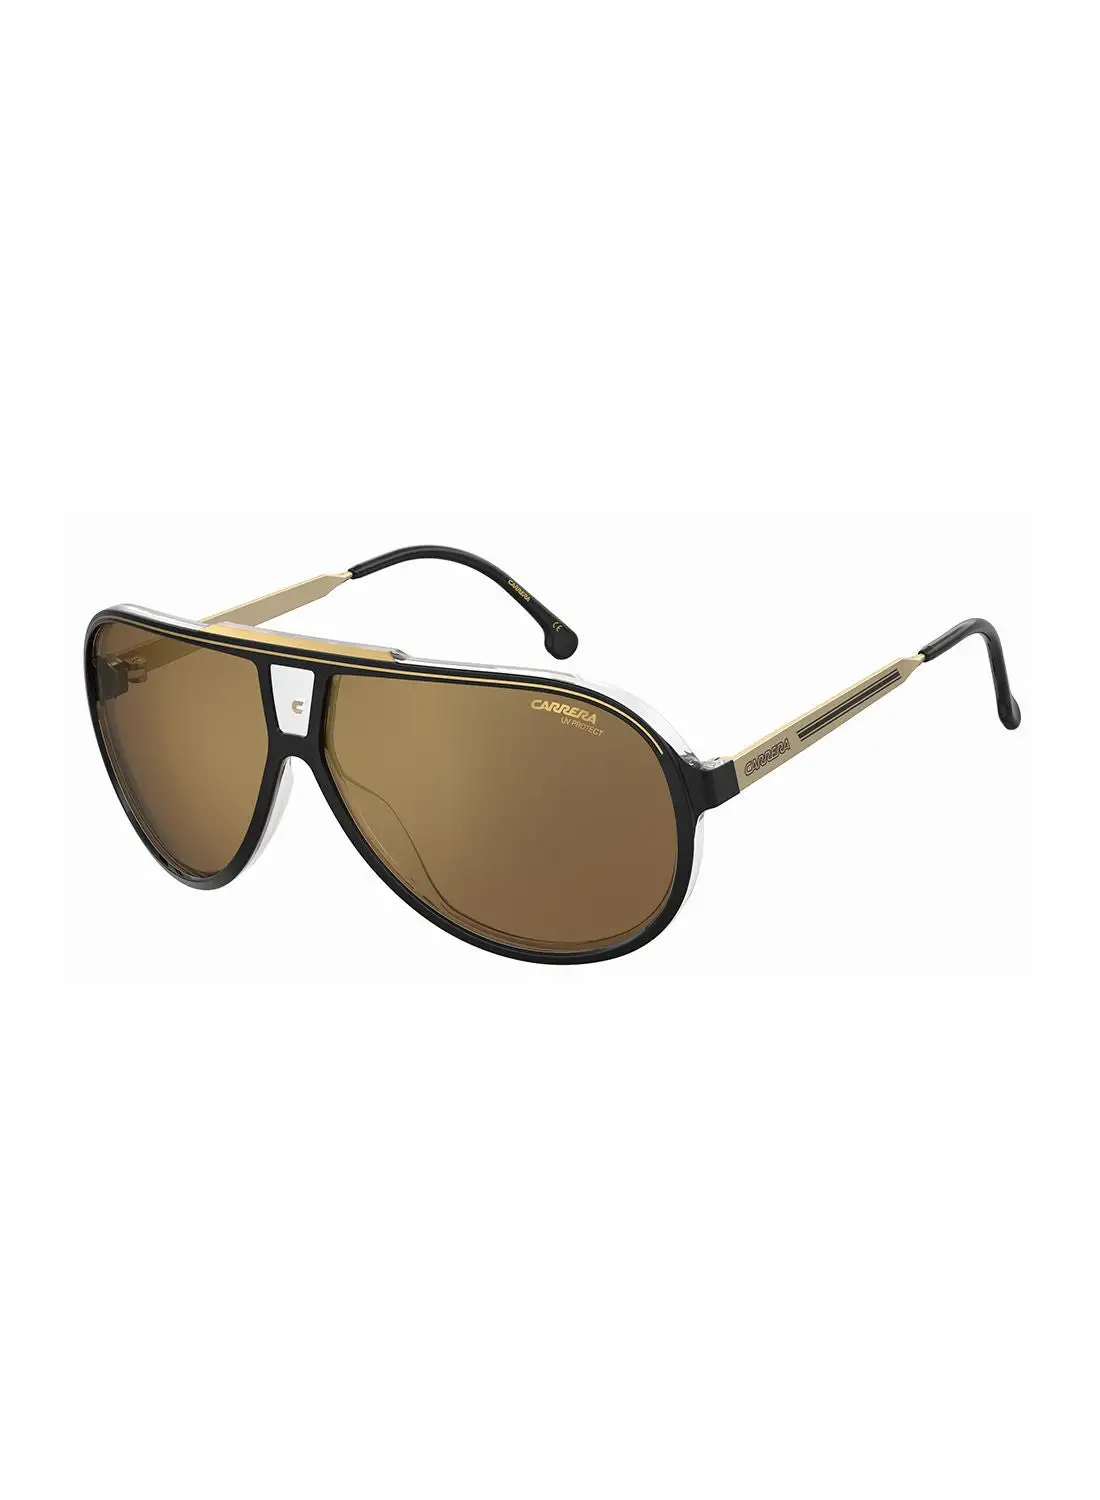 نظارة شمسية كاريرا للرجال للحماية من الأشعة فوق البنفسجية - Carrera 1050/S Blk Gold 63 - مقاس العدسة: 63 ملم